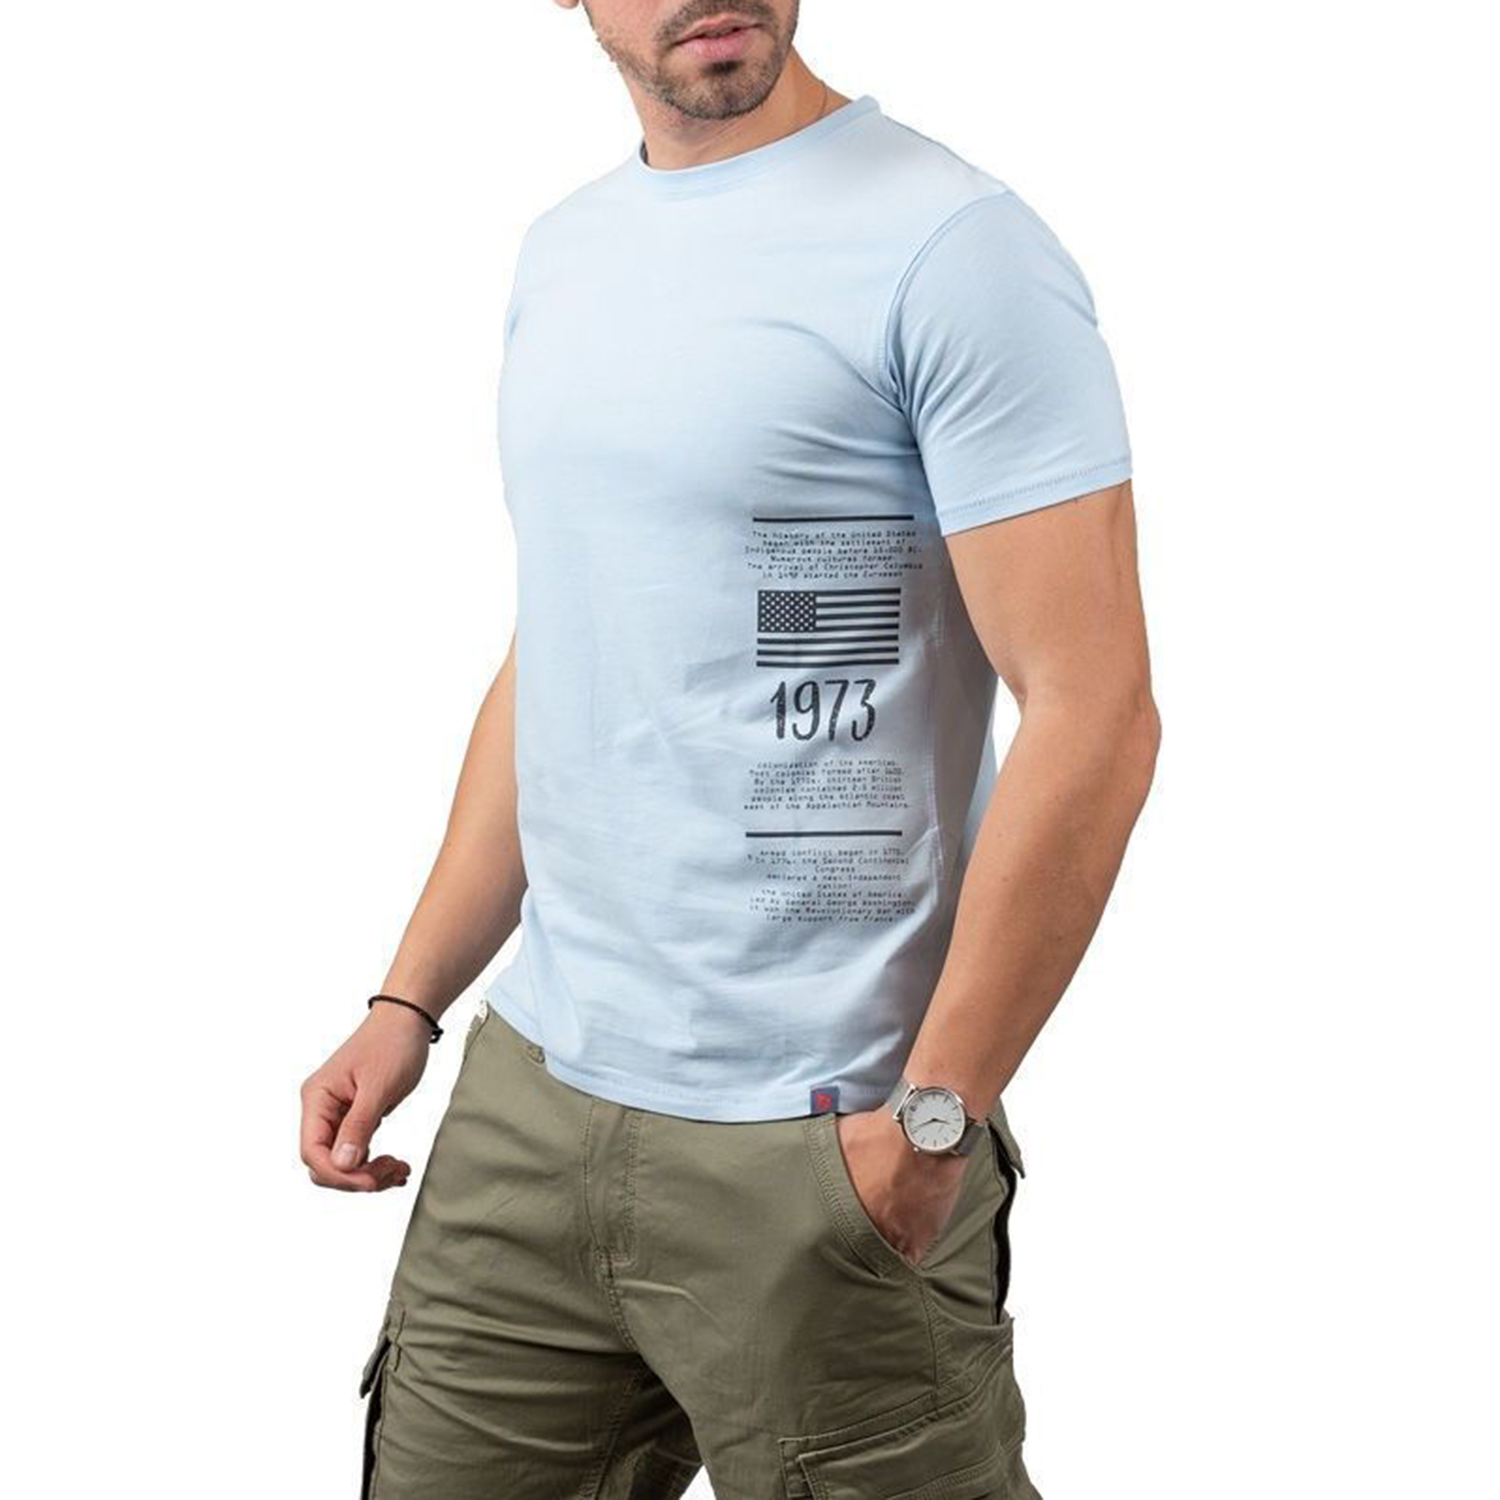 Ανδρικά/Ρούχα/Μπλούζες/Κοντομάνικες BATTERY - Ανδρικό t-shirt BATTERY PEACH μπλε